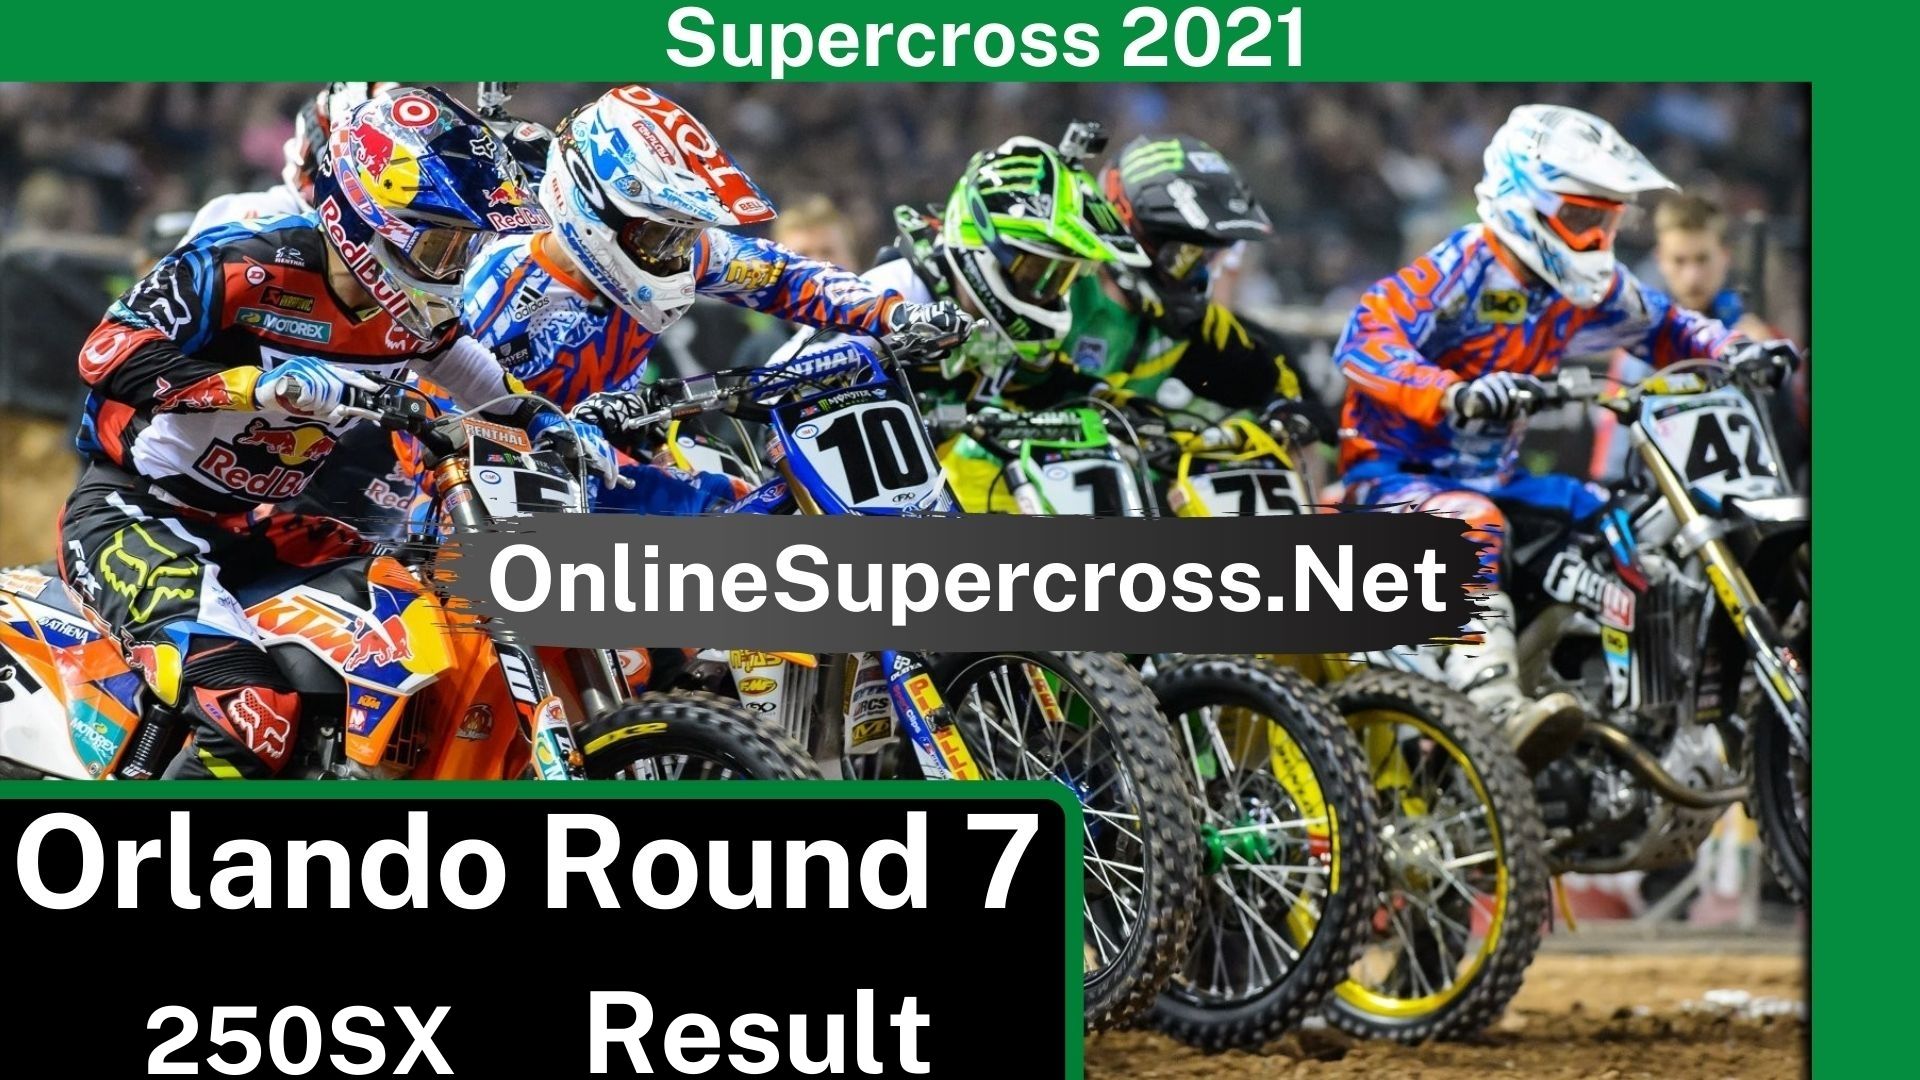 Orlando Round 7 Supercross 250SX Result 2021